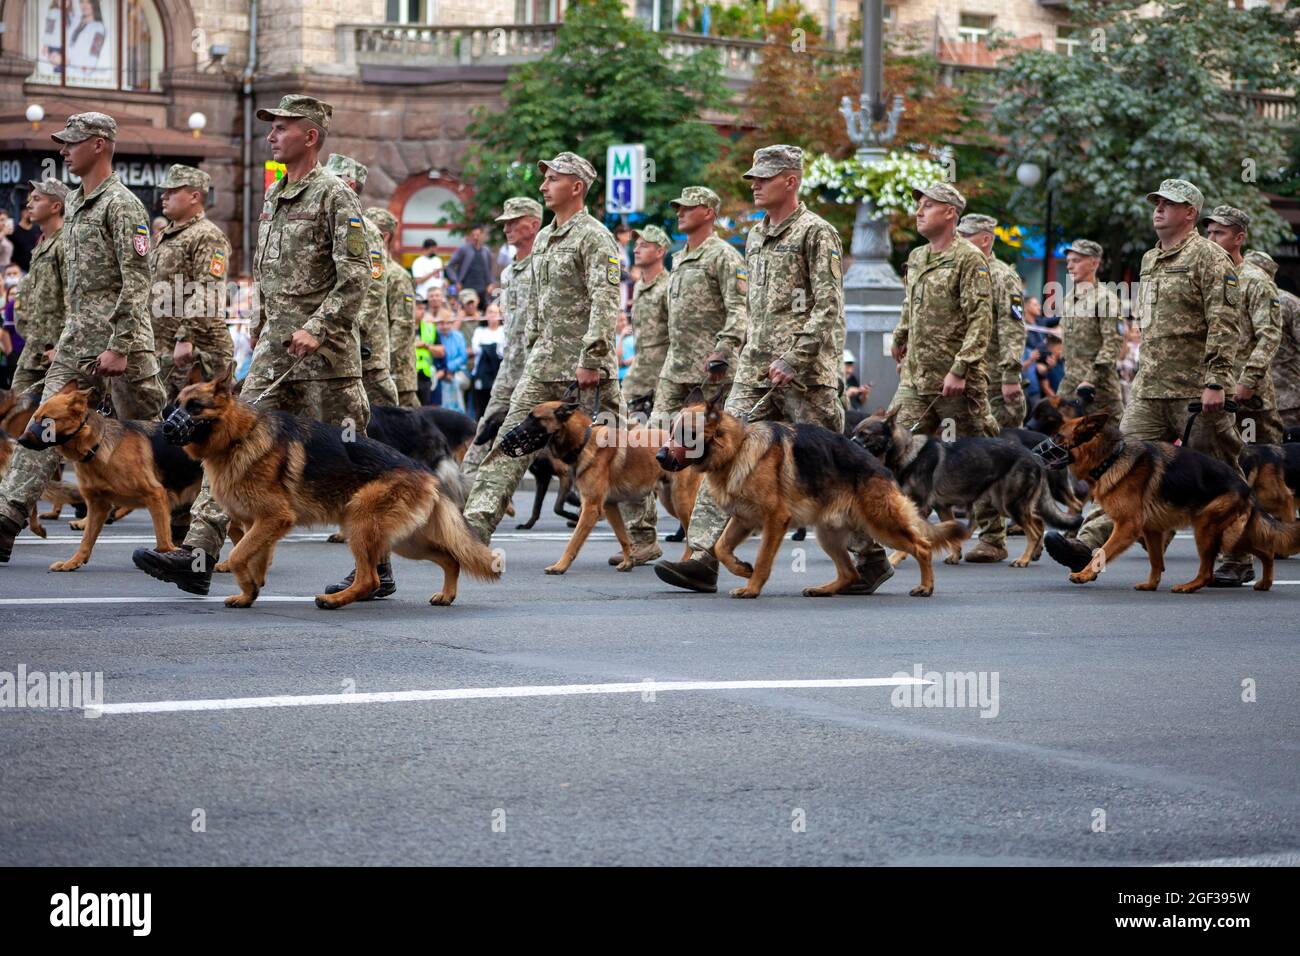 Ukraine, Kiev - 18 août 2021 : chiens de garde de berger au poste de garde-frontière. Marche militaire ukrainienne dans le défilé. Infanterie de l'armée. Hommes dans la rue Banque D'Images